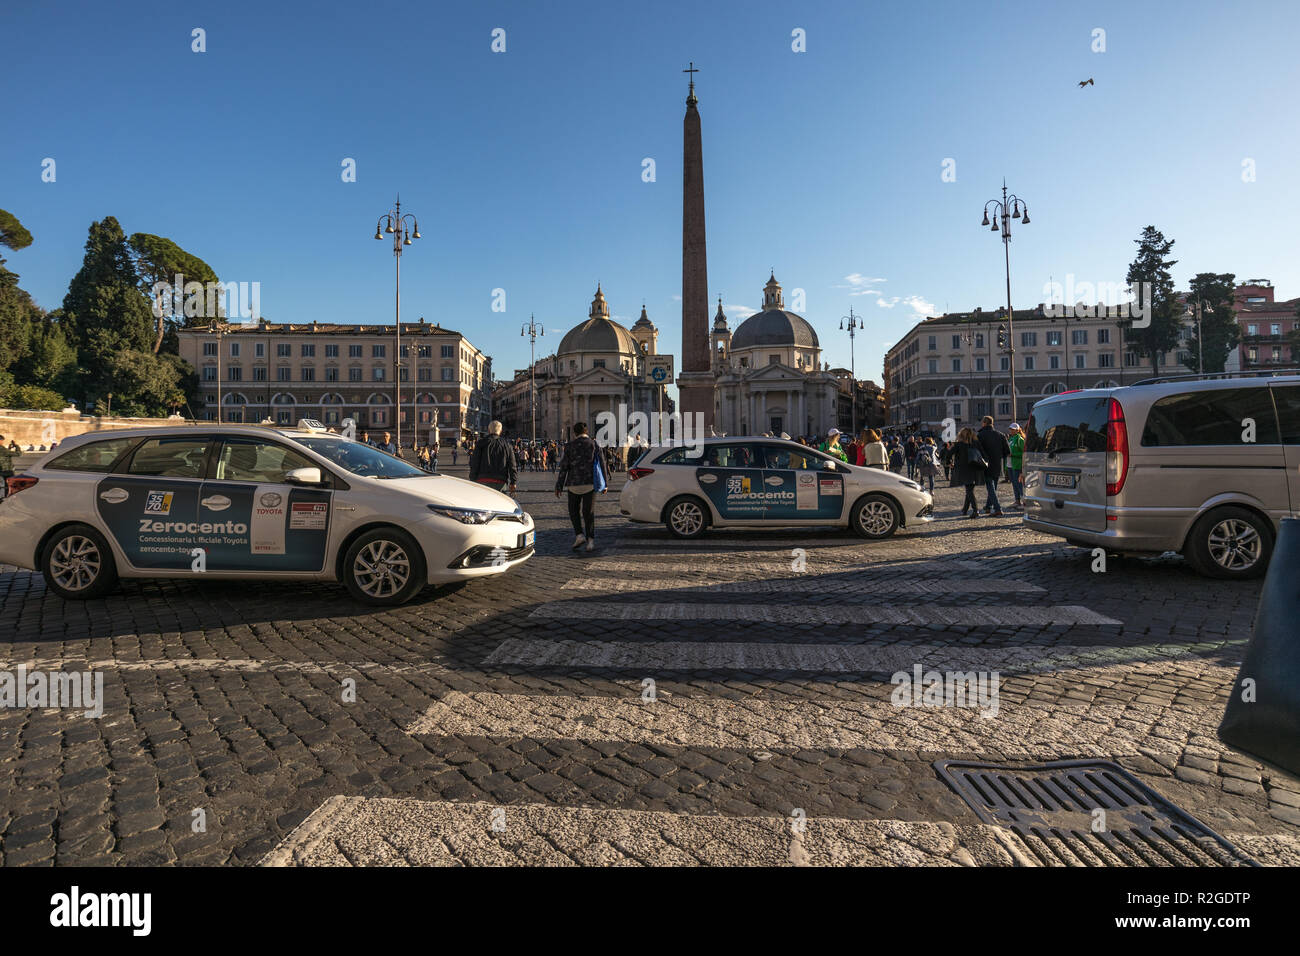 11/09/2018 - Rome, Italie : Dimanche après-midi, les voitures de taxi en passant par la Piazza del Popolo, avec un bon nombre de touristes en visite à Rome. Banque D'Images